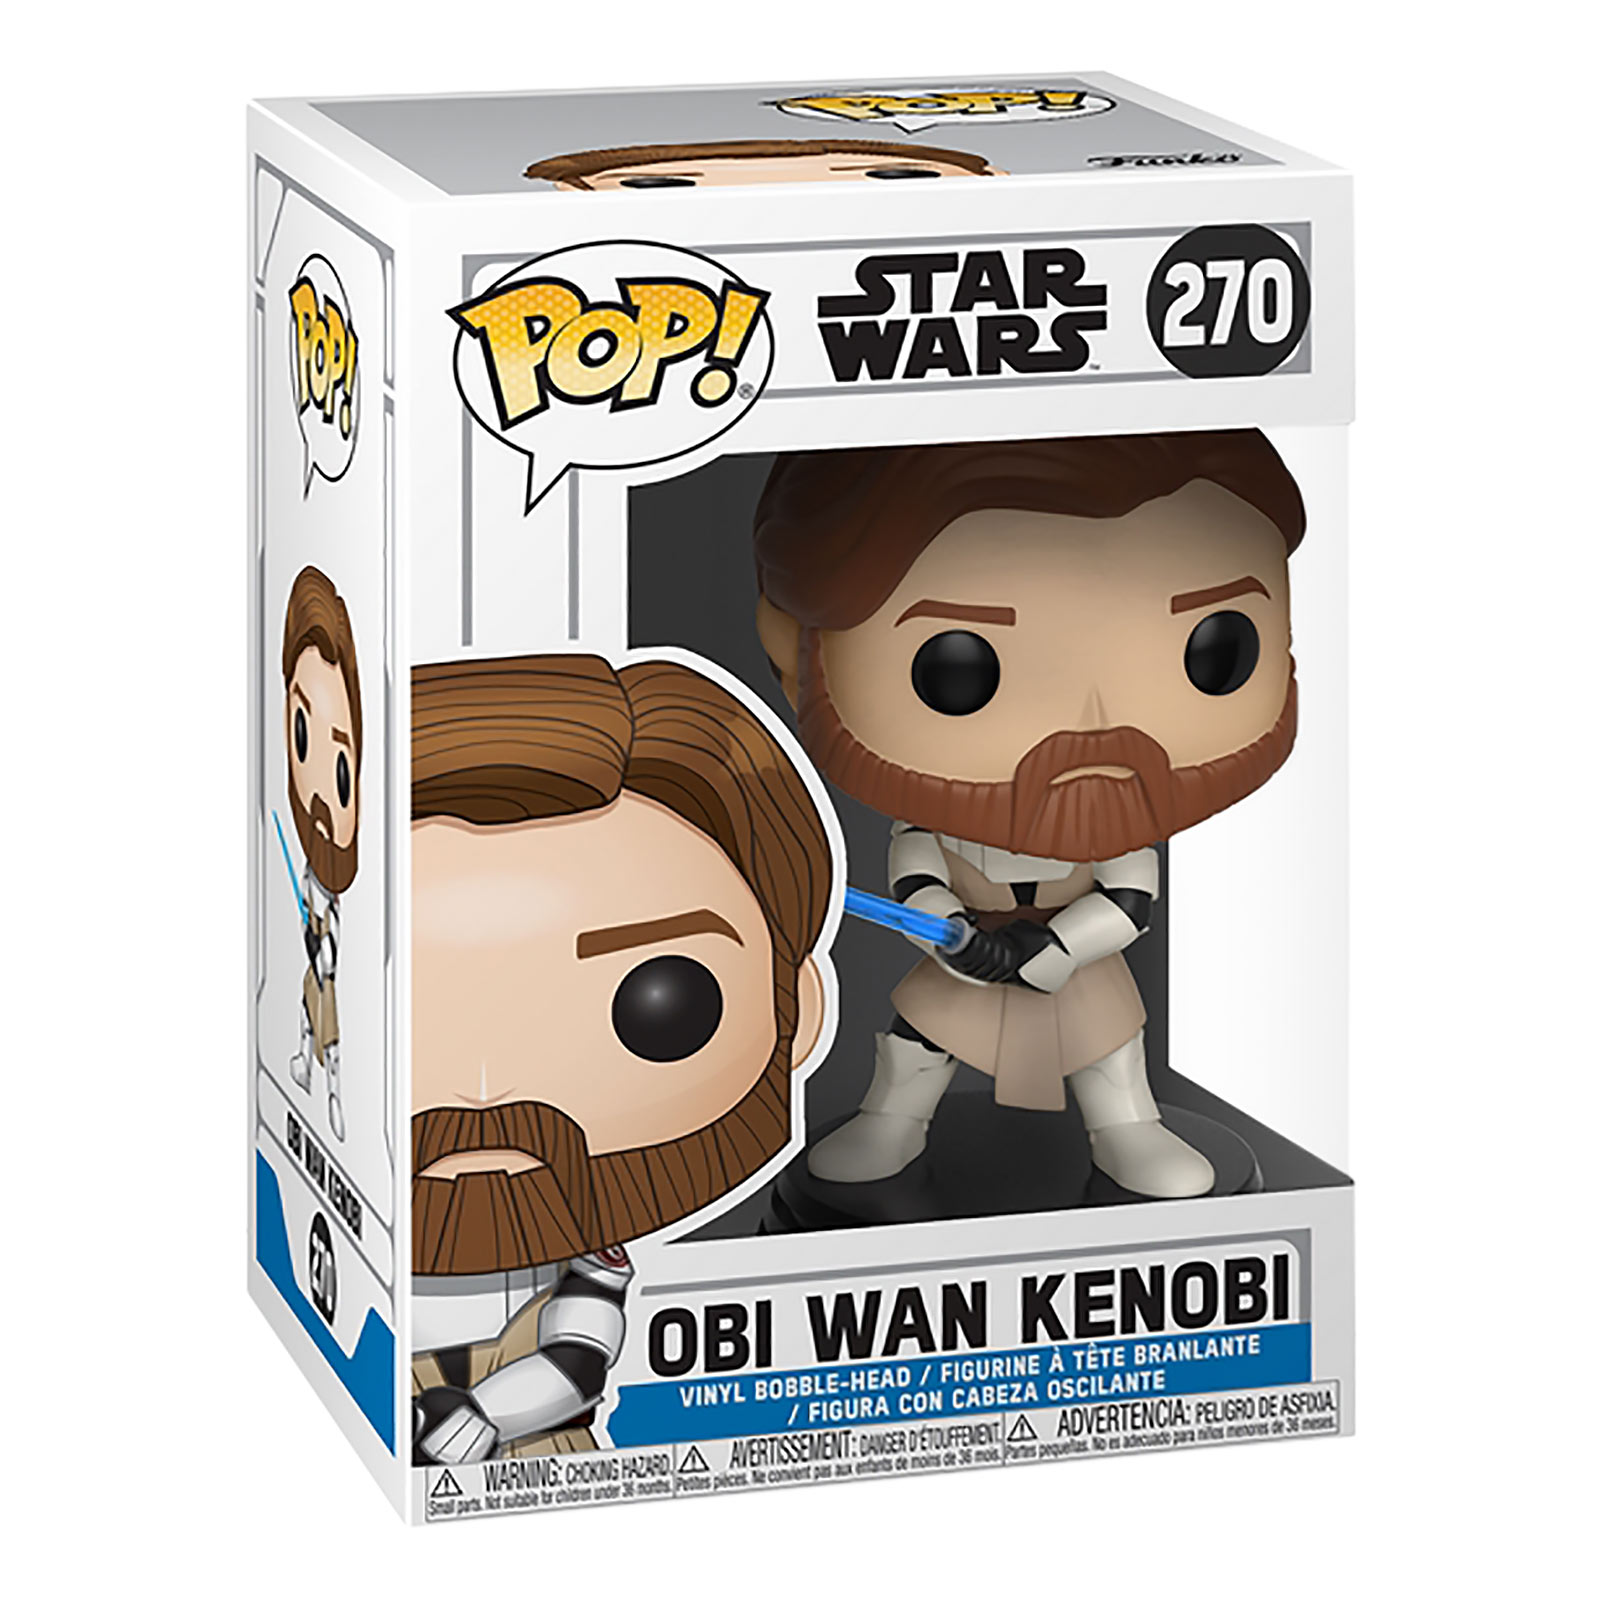 Star Wars - Clone Wars Obi Wan Kenobi Funko Pop bobblehead figure